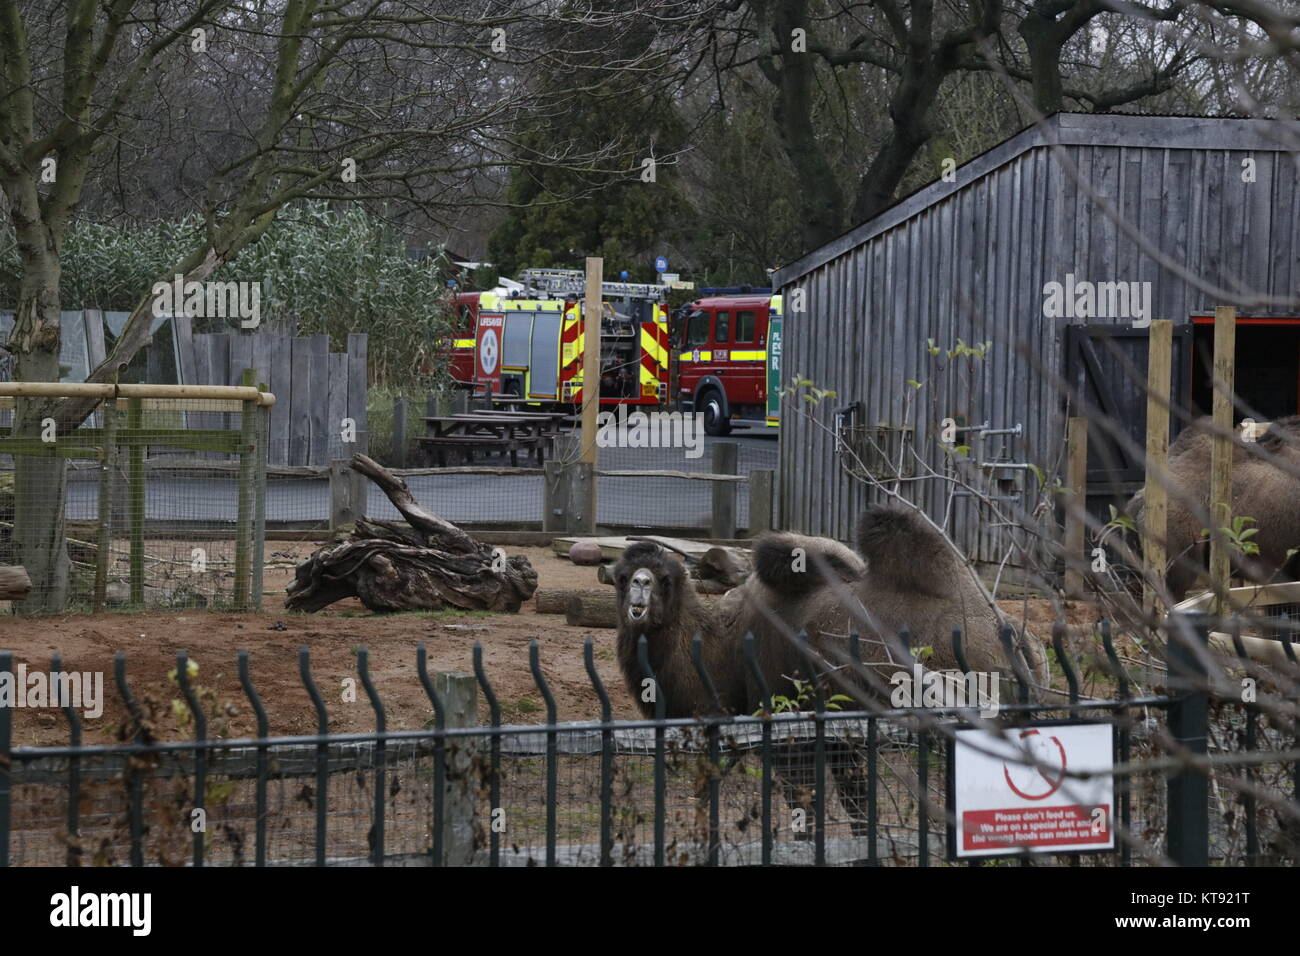 Londres, Reino Unido. 23 dic, 2017. El Zoológico de Londres donde el fuego 70 bomberos respondió Crédito: Fantástico conejo/Alamy Live News Foto de stock